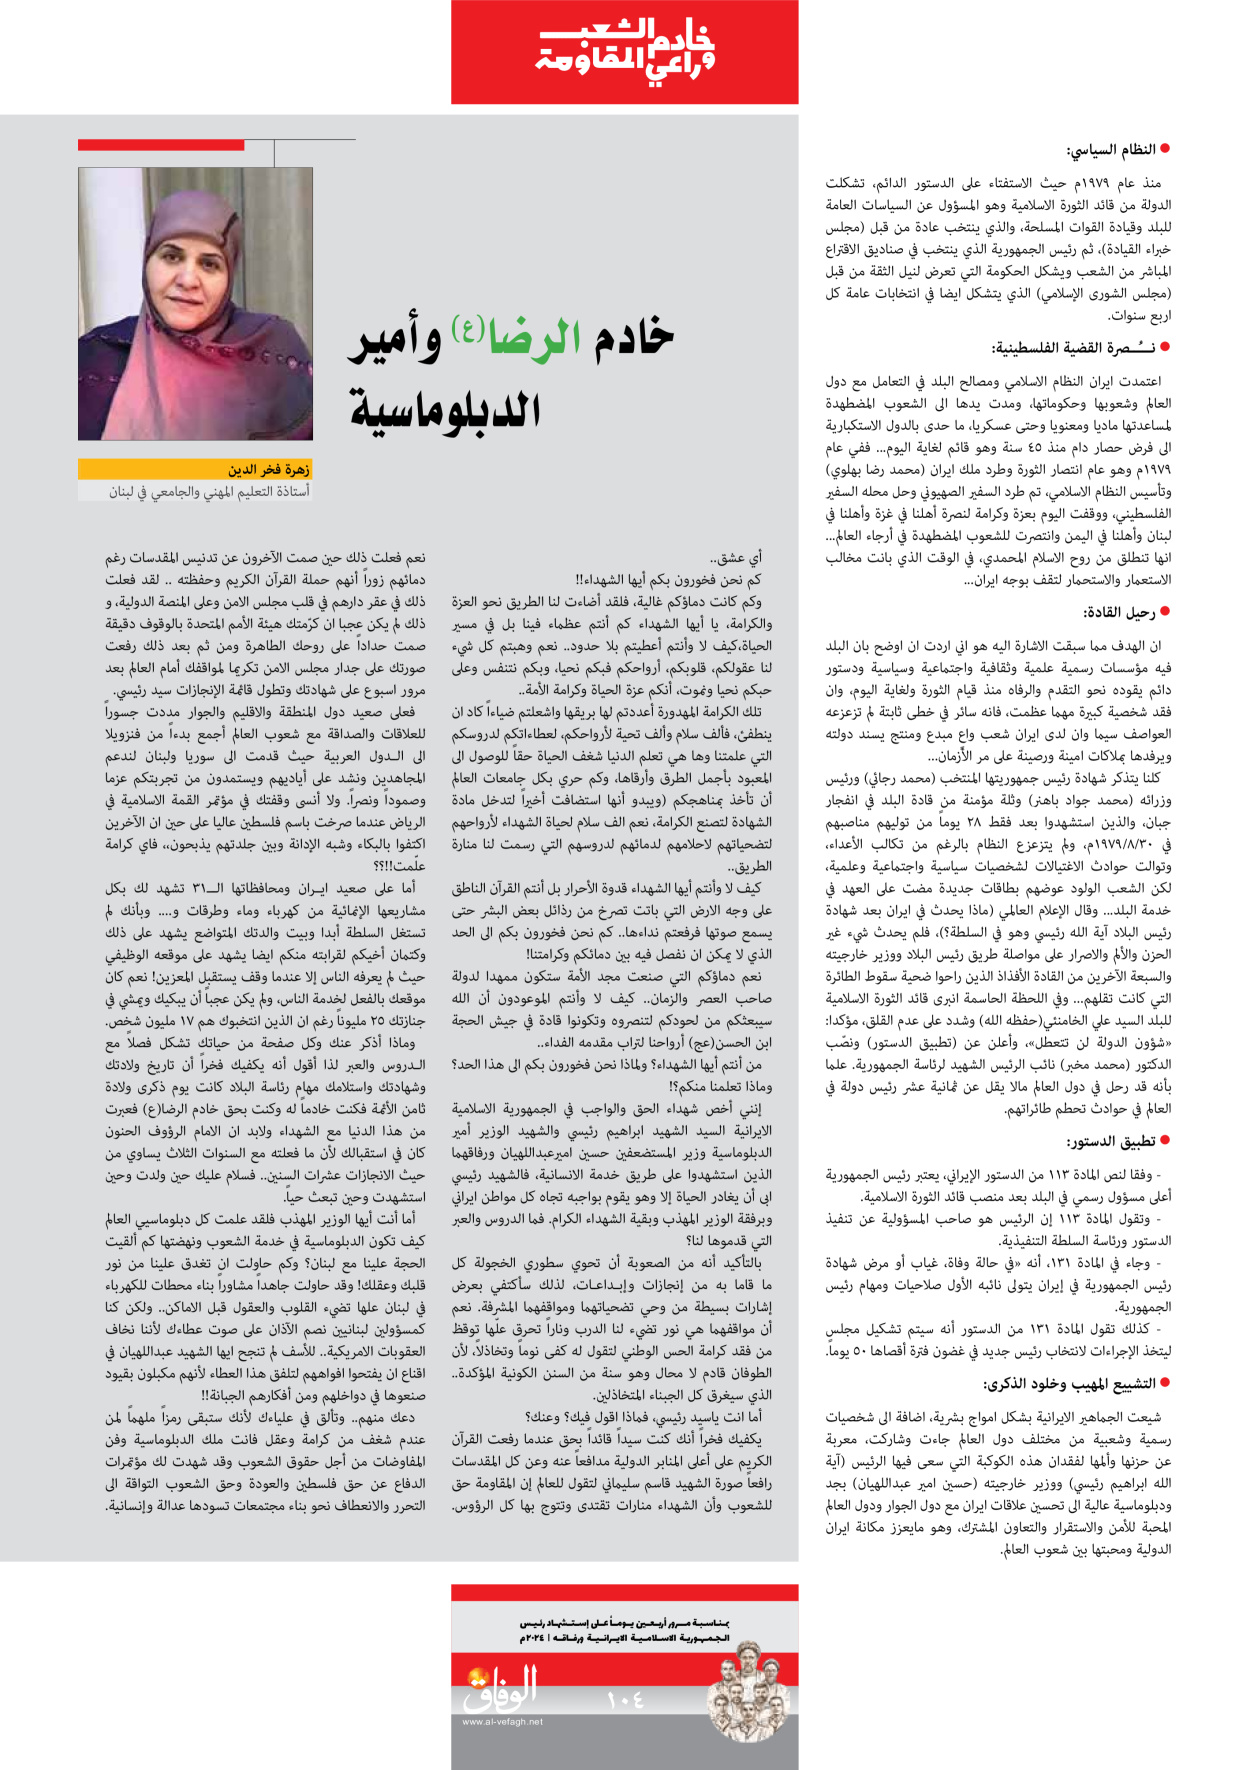 صحیفة ایران الدولیة الوفاق - ملحق ویژه نامه چهلم شهید رییسی - ٢٩ يونيو ٢٠٢٤ - الصفحة ۱۰۳